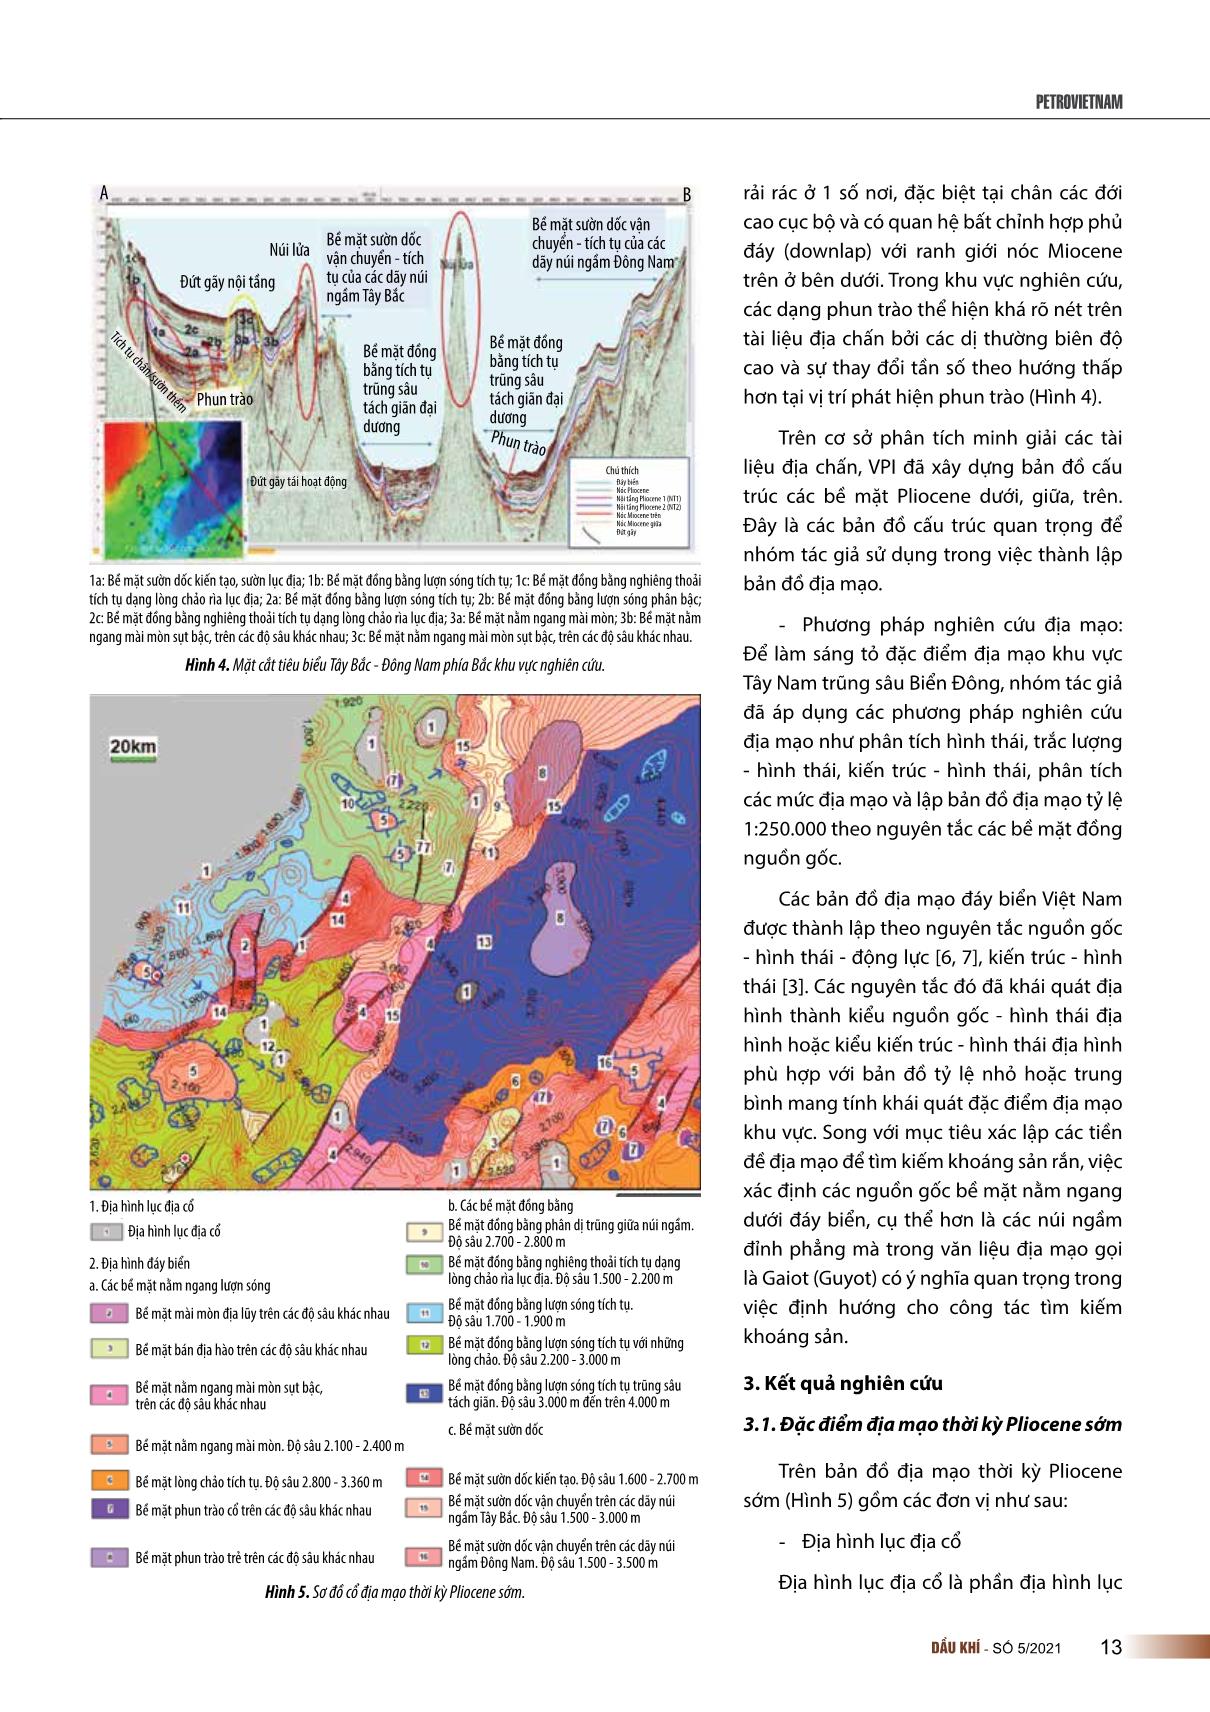 Đặc điểm địa mạo thời kỳ Pliocene khu vực Tây Nam trũng sâu biển Đông trang 3